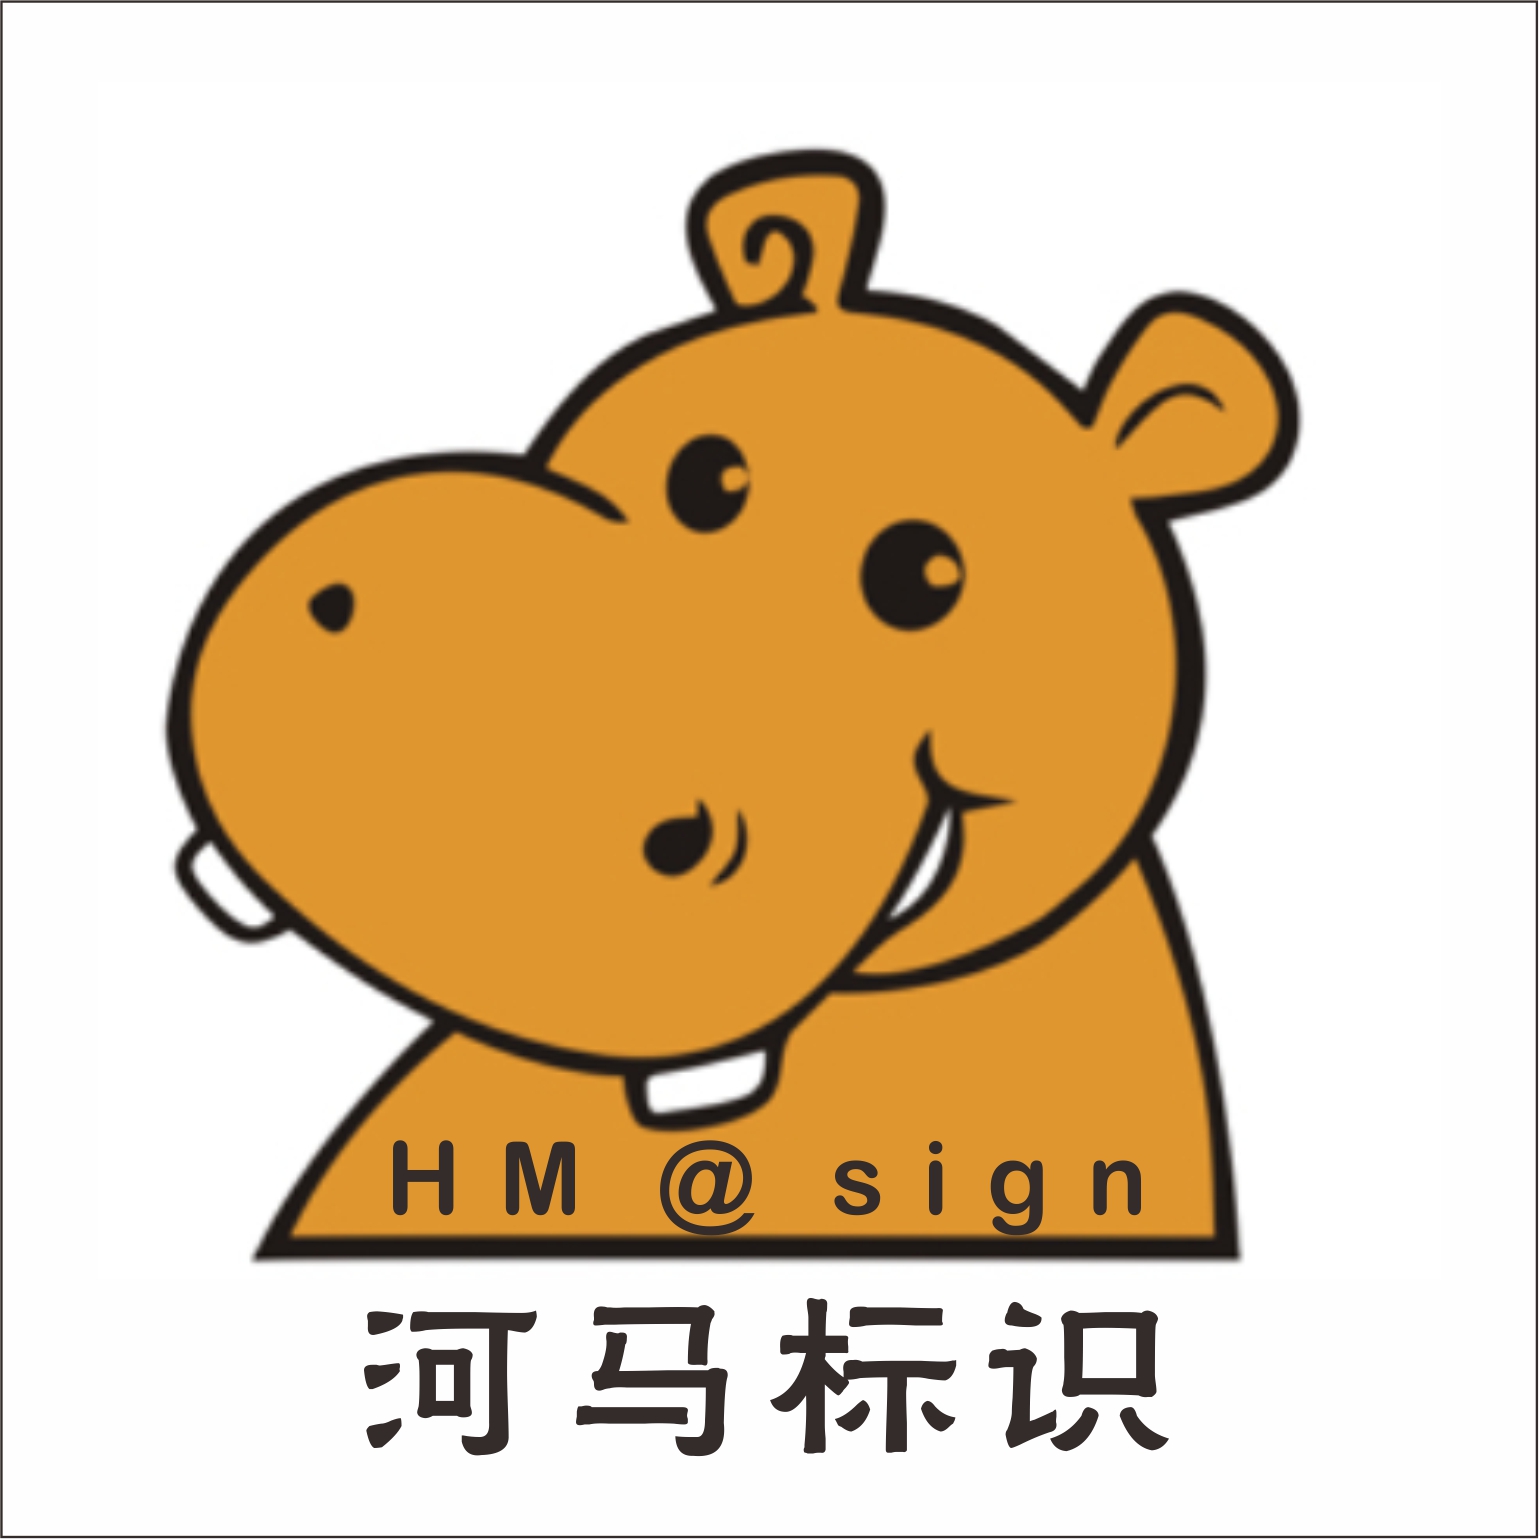 惠州市河马标识设计制作有限公司